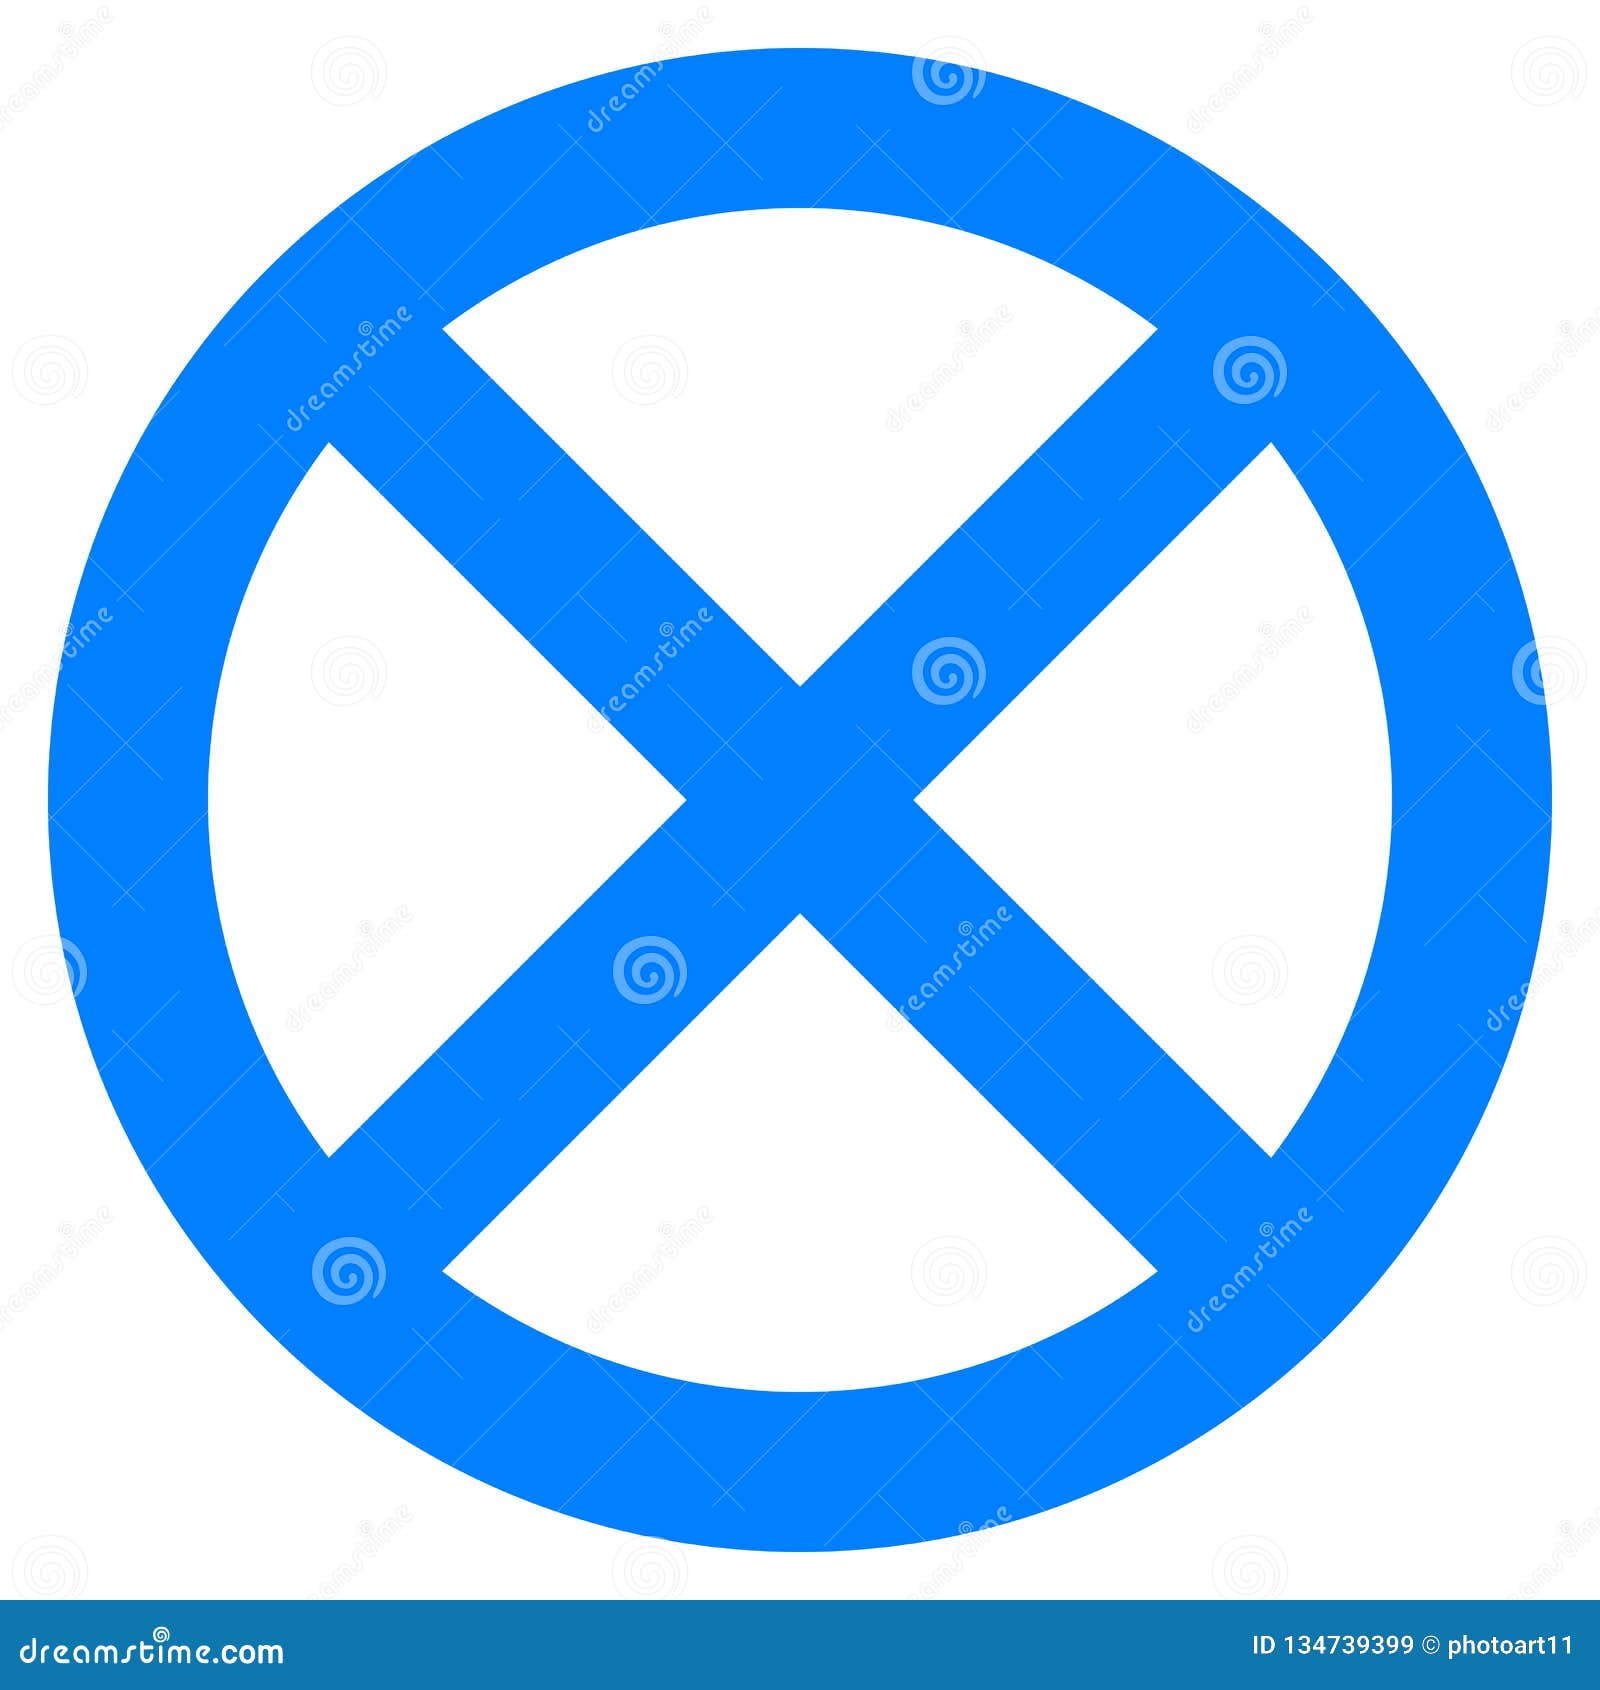 Перечеркнутый синий круг знак. Перечеркнутый синий круг. Знак круглый синий перечеркнутый. Дорожный знак перечеркнутый круг. Синий знак с белой полосой перечеркнут.